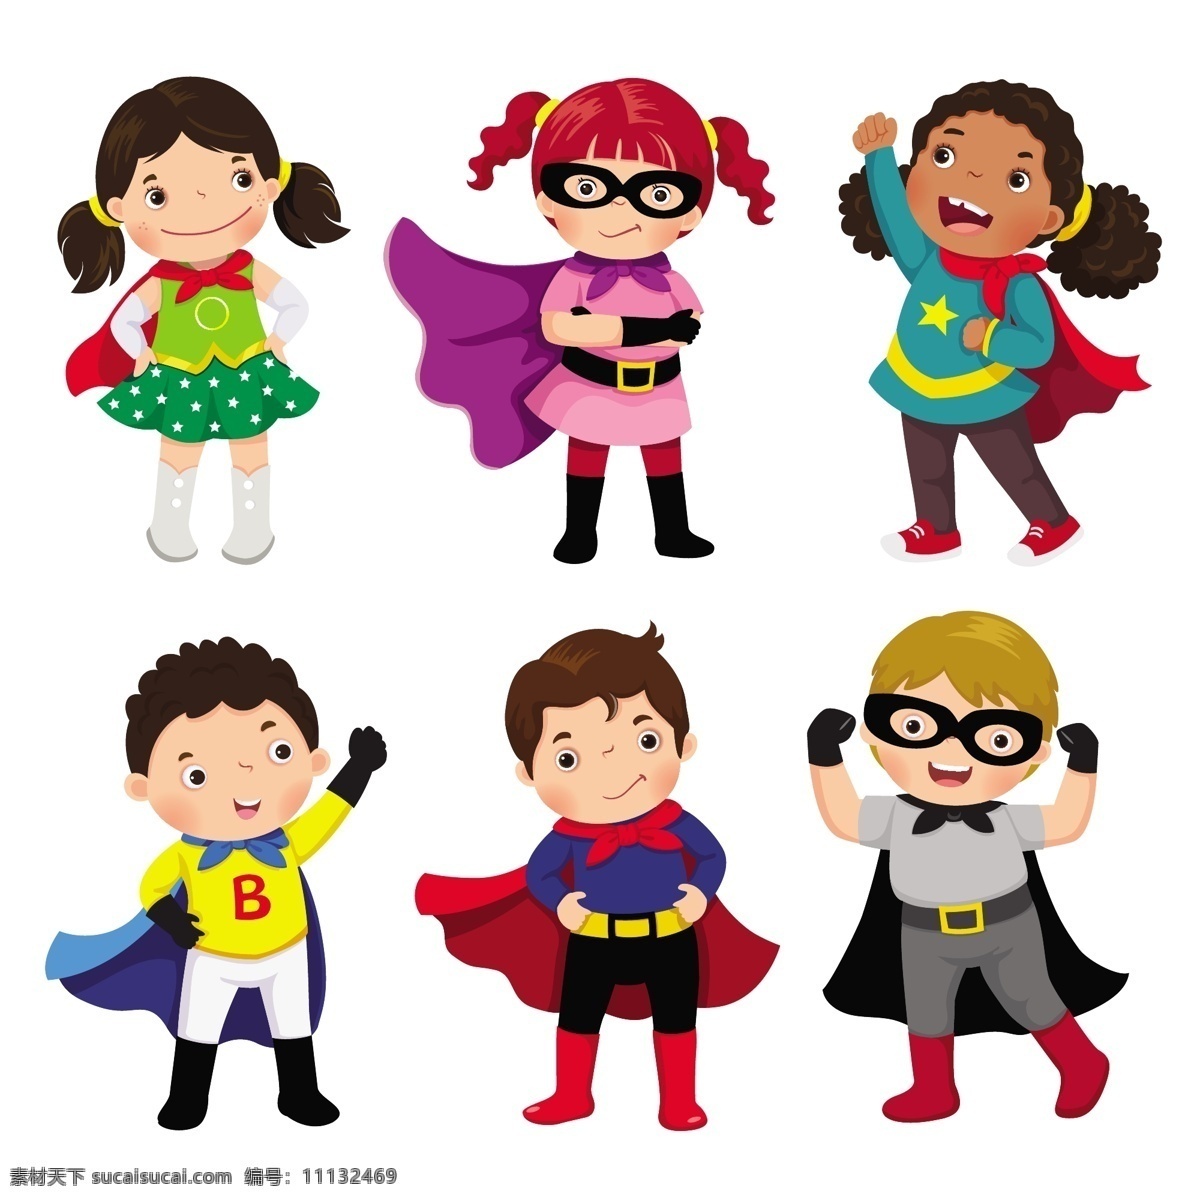 超级 英雄 卡通 形象设计 可爱 儿童 超人 美国队长 漫威 漫画 雷神 童话人物 形象 卡通形象 超级英雄 dc 蝙蝠侠 动漫动画 动漫人物